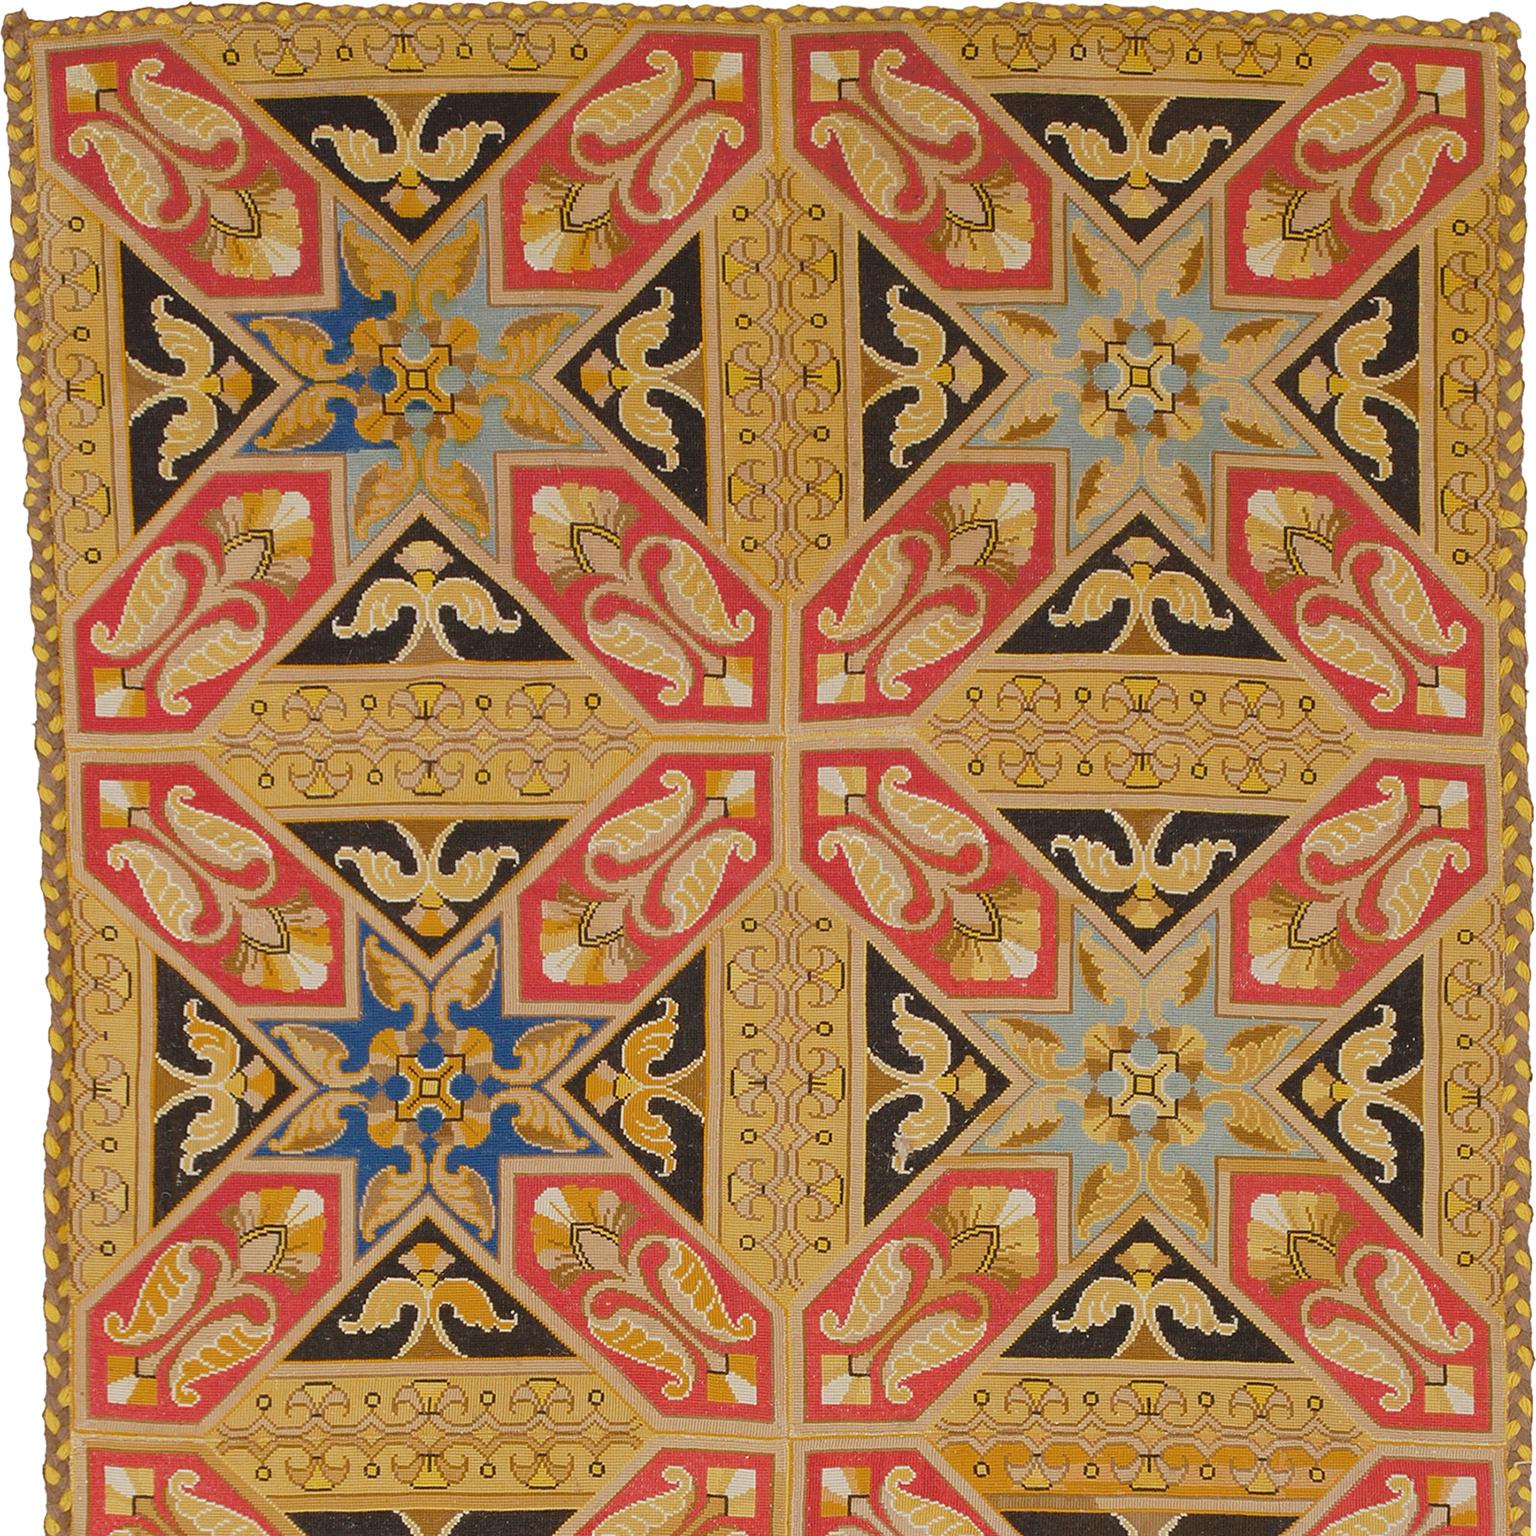 French needlepoint rug/runner
France ca. 1880
handwoven.
 